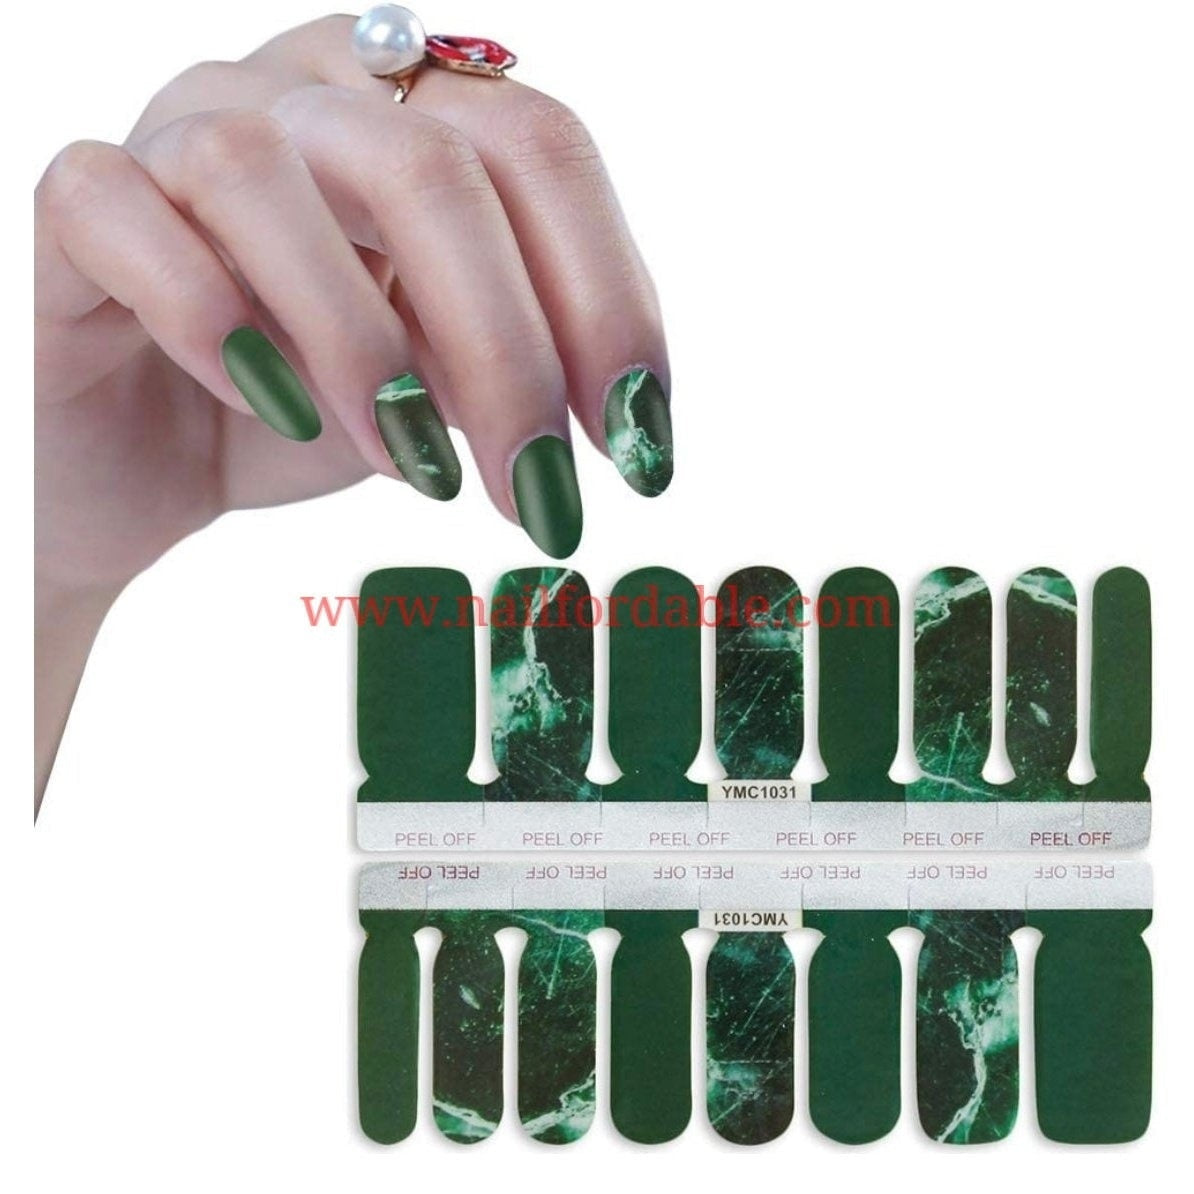 Dark green granite Nail Wraps | Semi Cured Gel Wraps | Gel Nail Wraps |Nail Polish | Nail Stickers